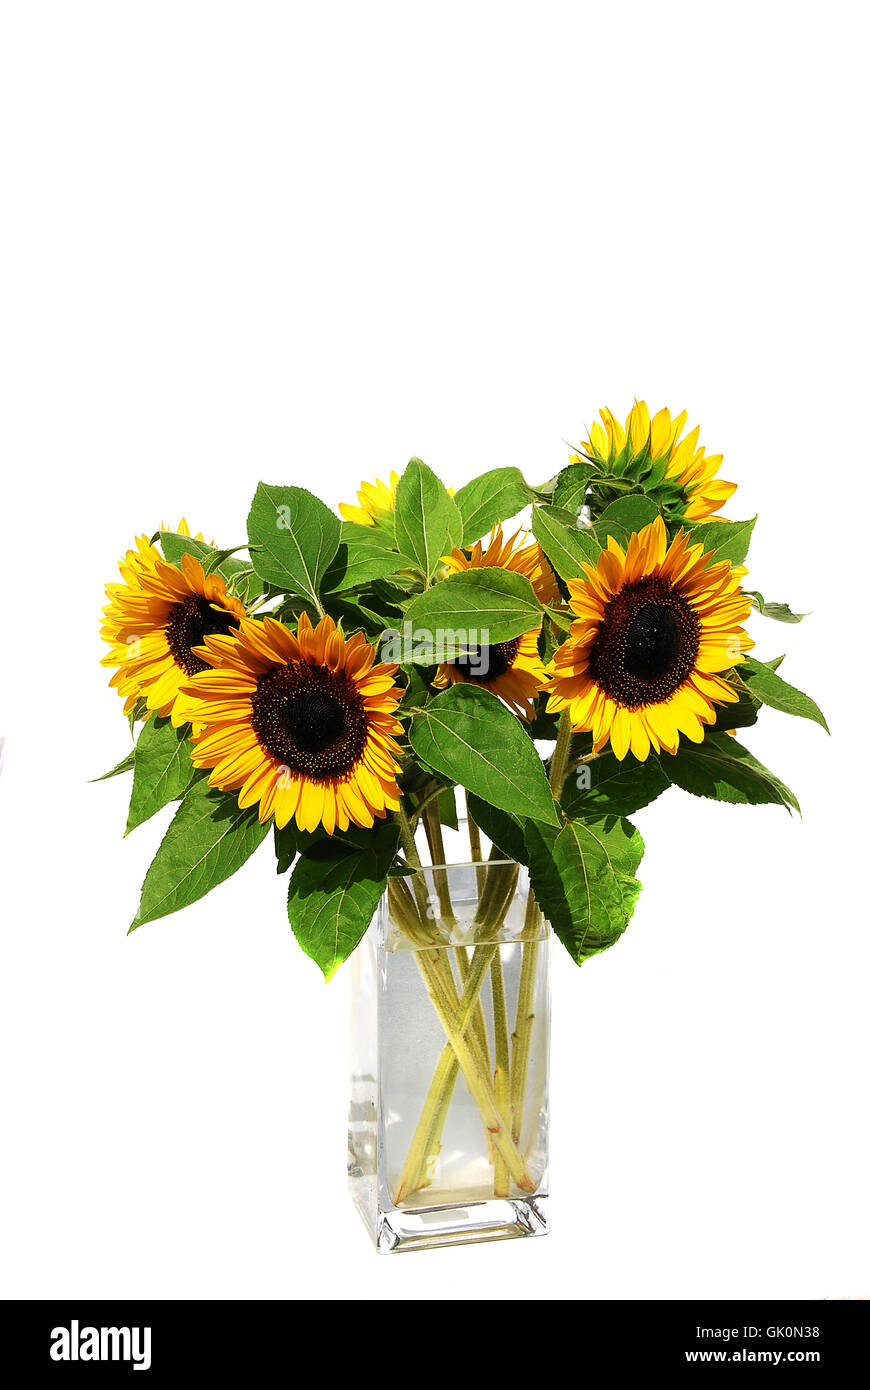 flower sunflower plant Stock Photo